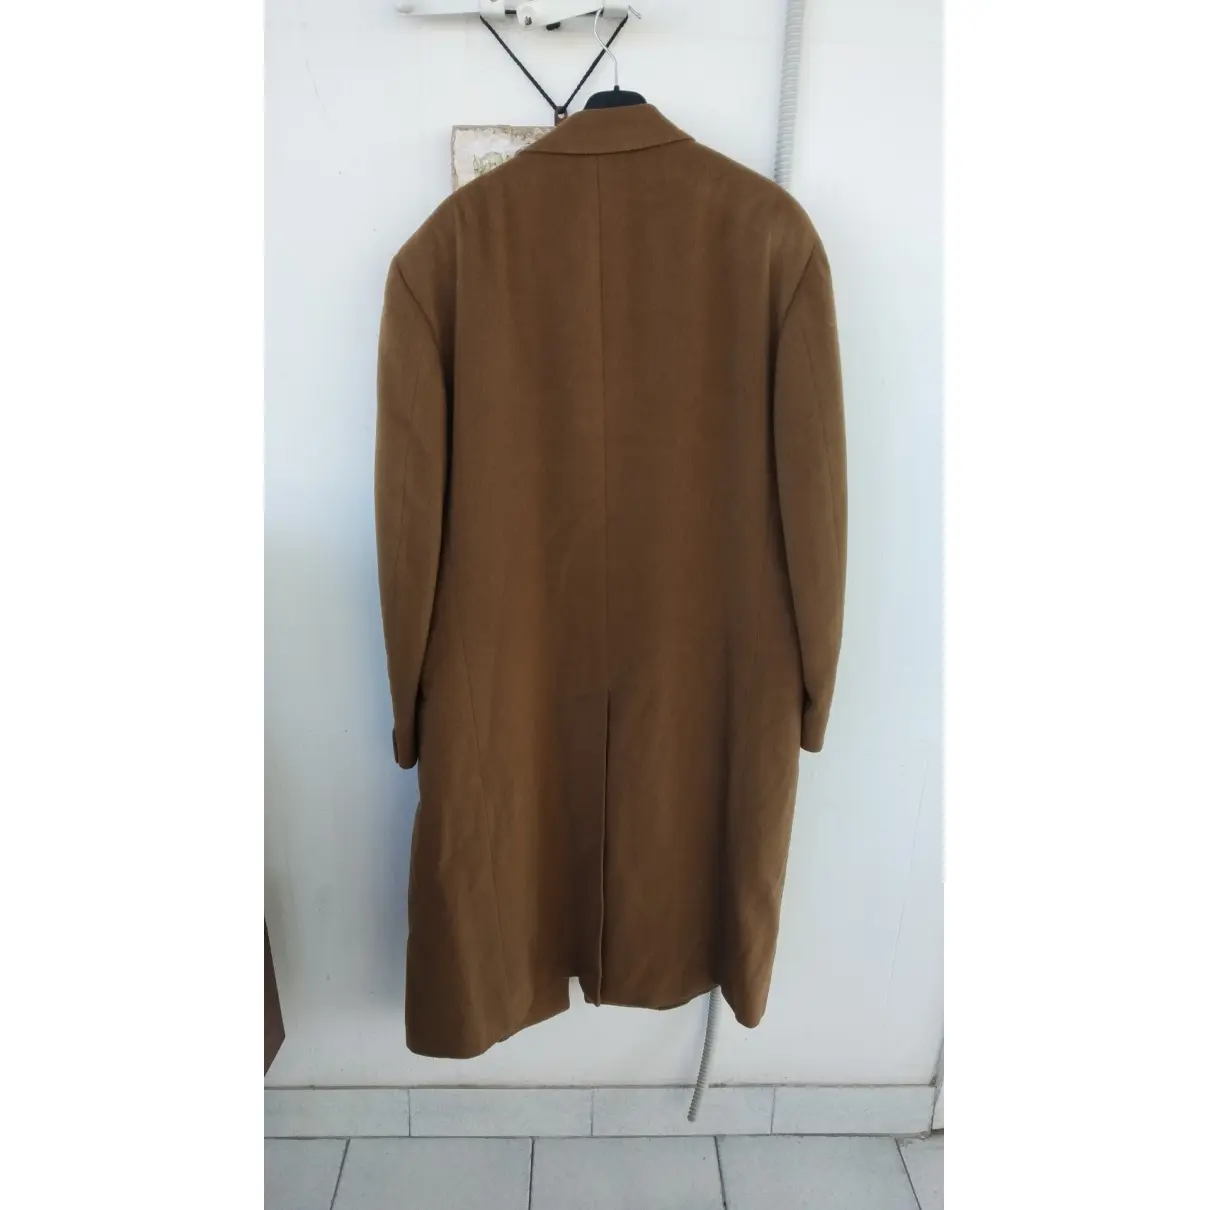 Buy Lanvin Cashmere coat online